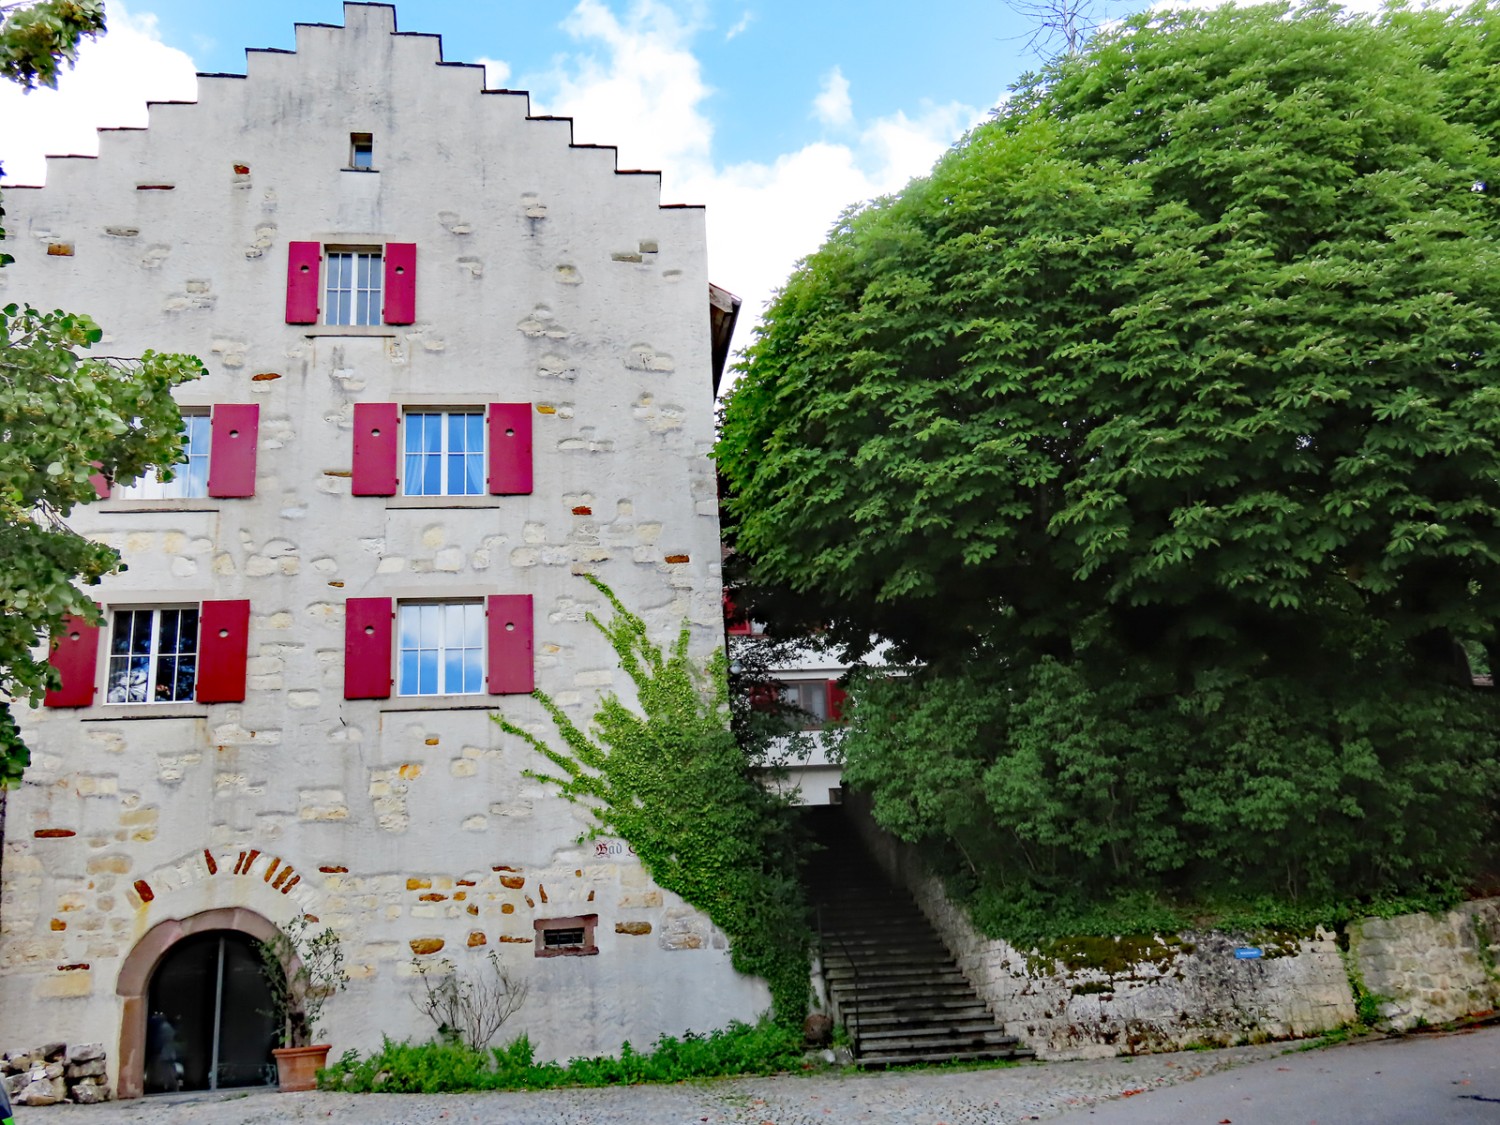 Dans le Wangetel se trouve l’auberge et le domaine viticole Bad Osterfingen. Photo: Heinz Trachsler